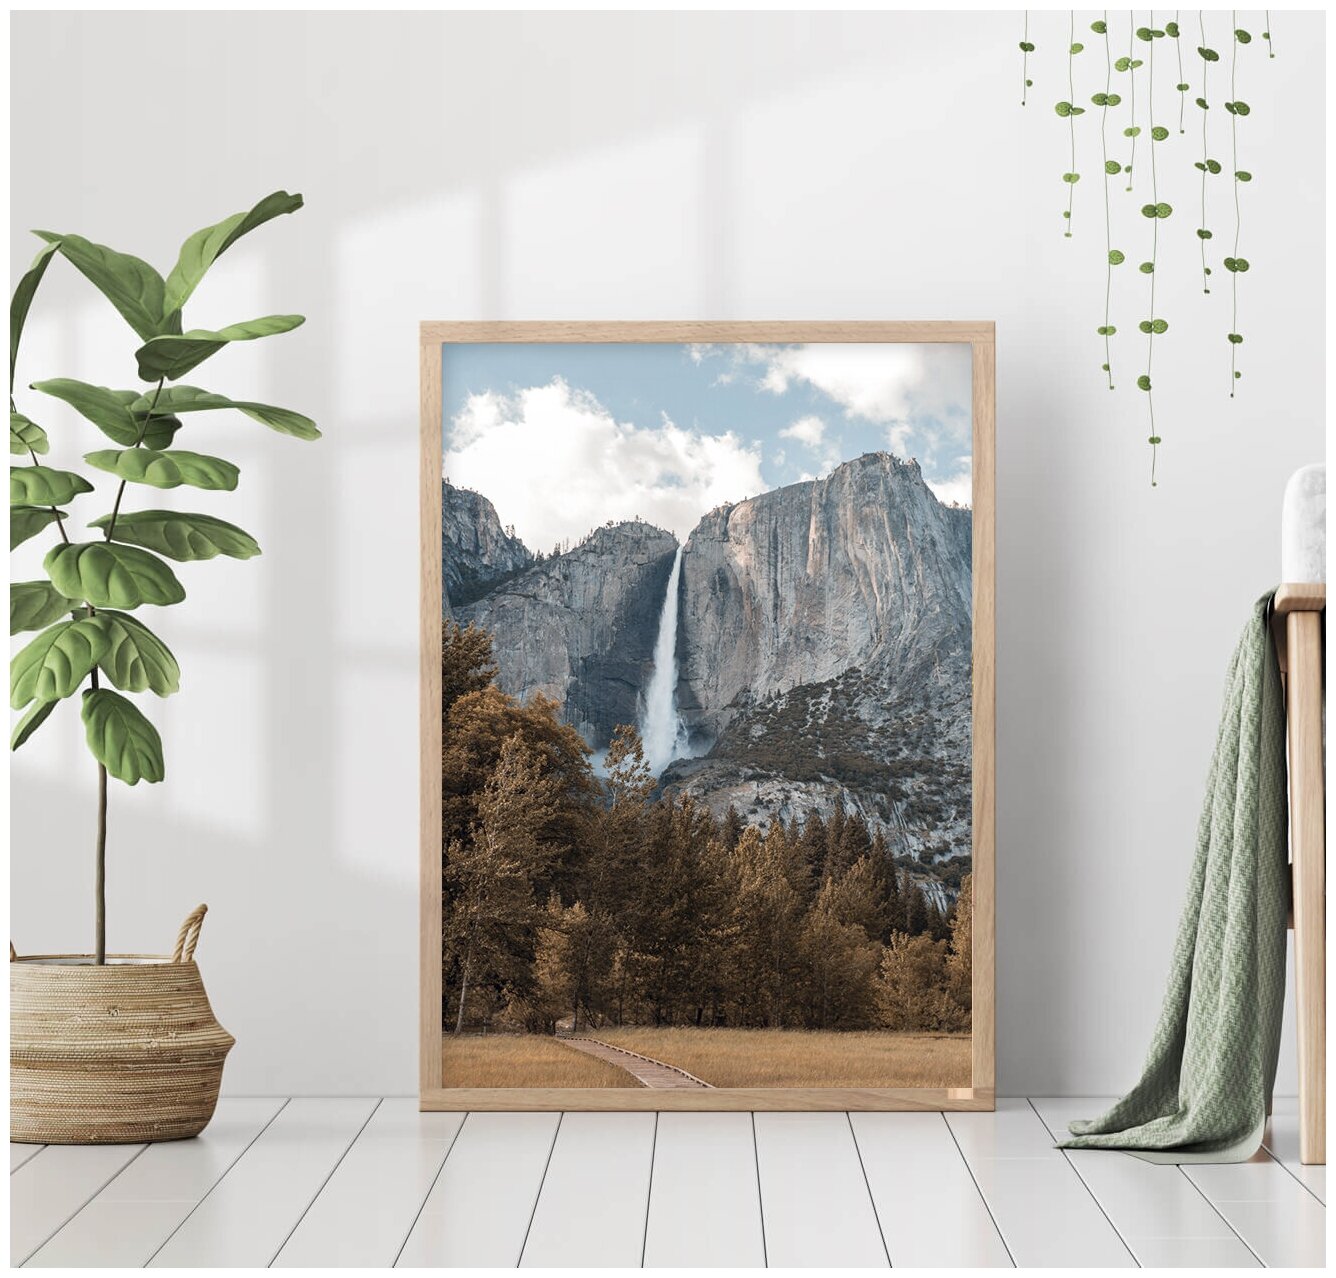 Постер без рамки "Йосемитский водопад, США" 30 на 40 в тубусе / Картина для интерьера / Плакат / Постер на стену / Интерьерные картины